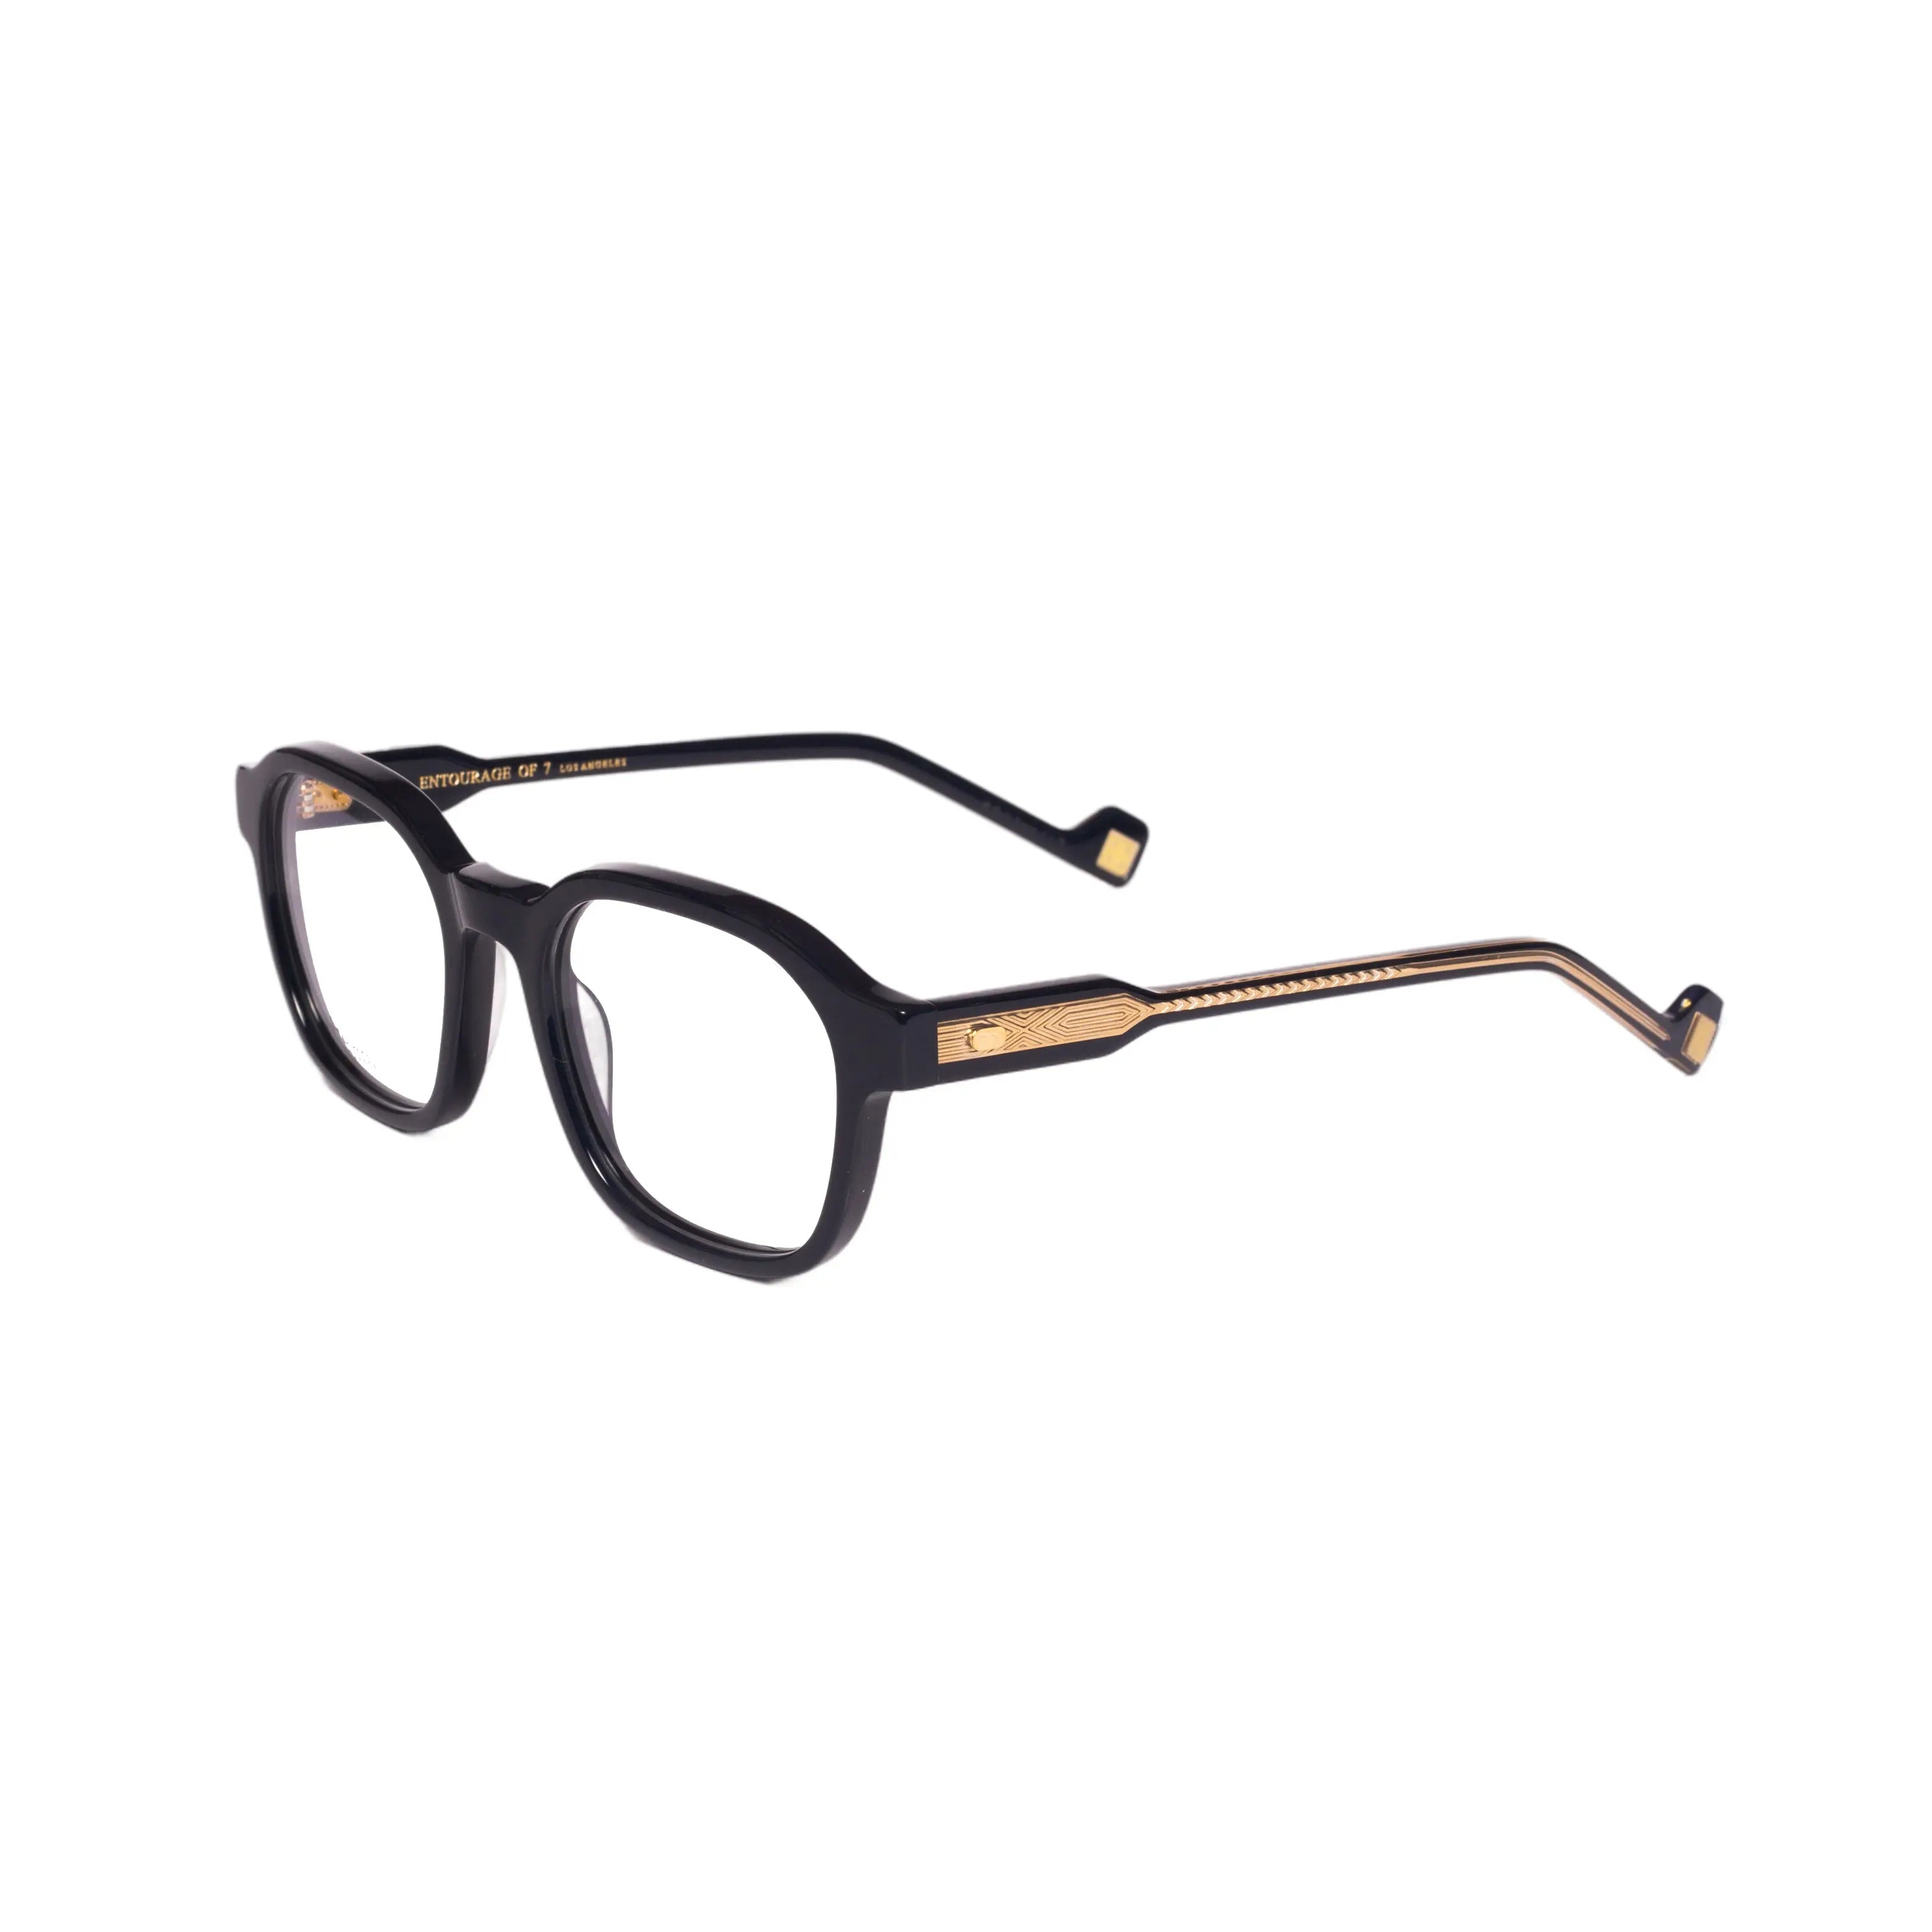 ENTOURAGE OF 7-OLIVER-50-C0543 Eyeglasses - Premium Eyeglasses from ENTOURAGE OF 7 - Just Rs. 17160! Shop now at Laxmi Opticians